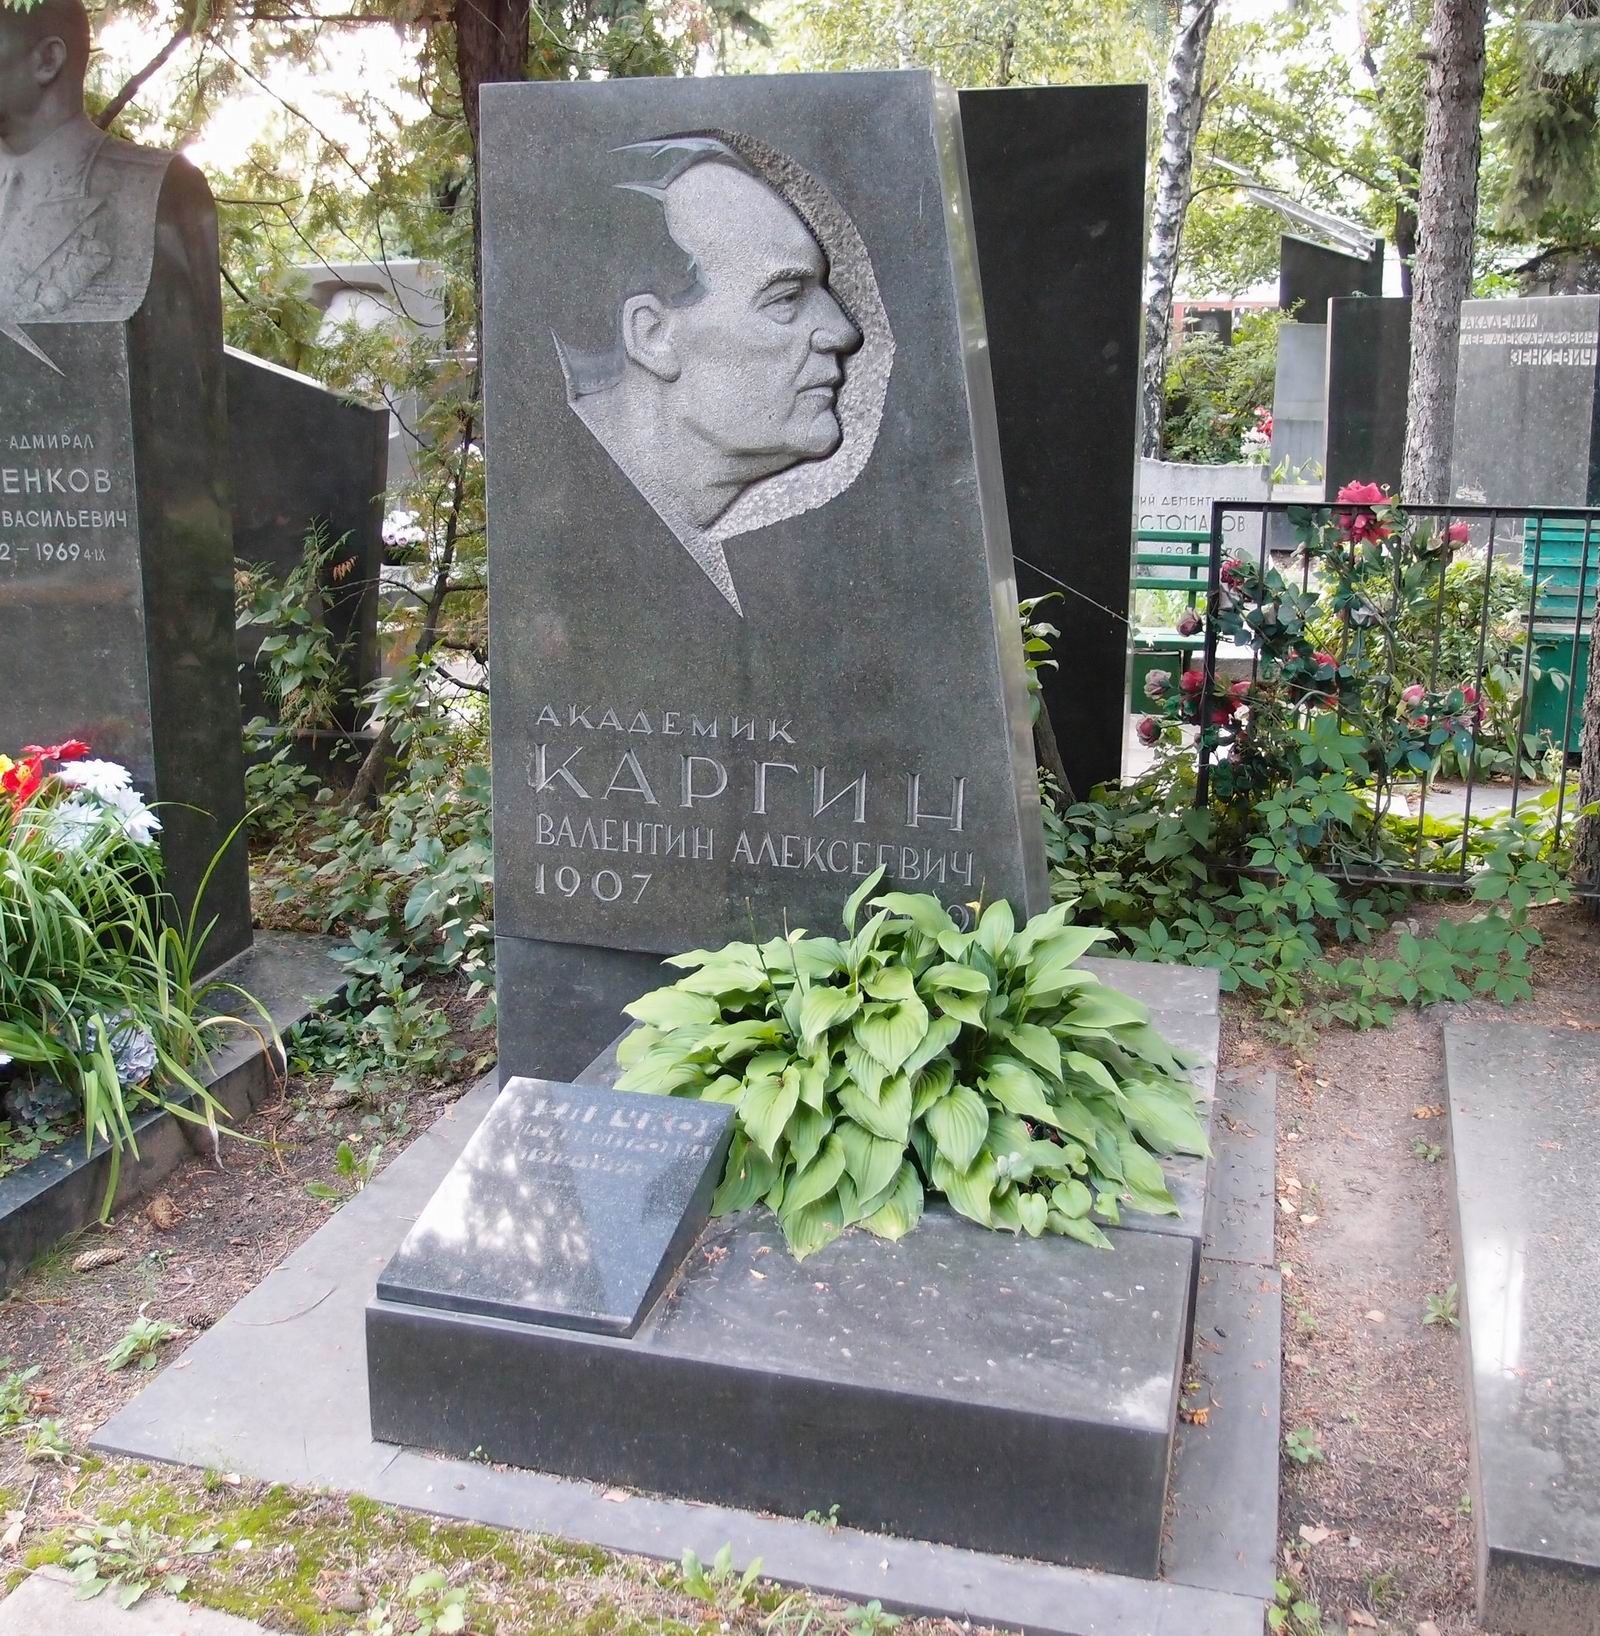 Памятник на могиле Каргина В.А. (1907-1969), ск. Н.Абакумцев, арх. В.Артамонов, на Новодевичьем кладбище (7-9-7).